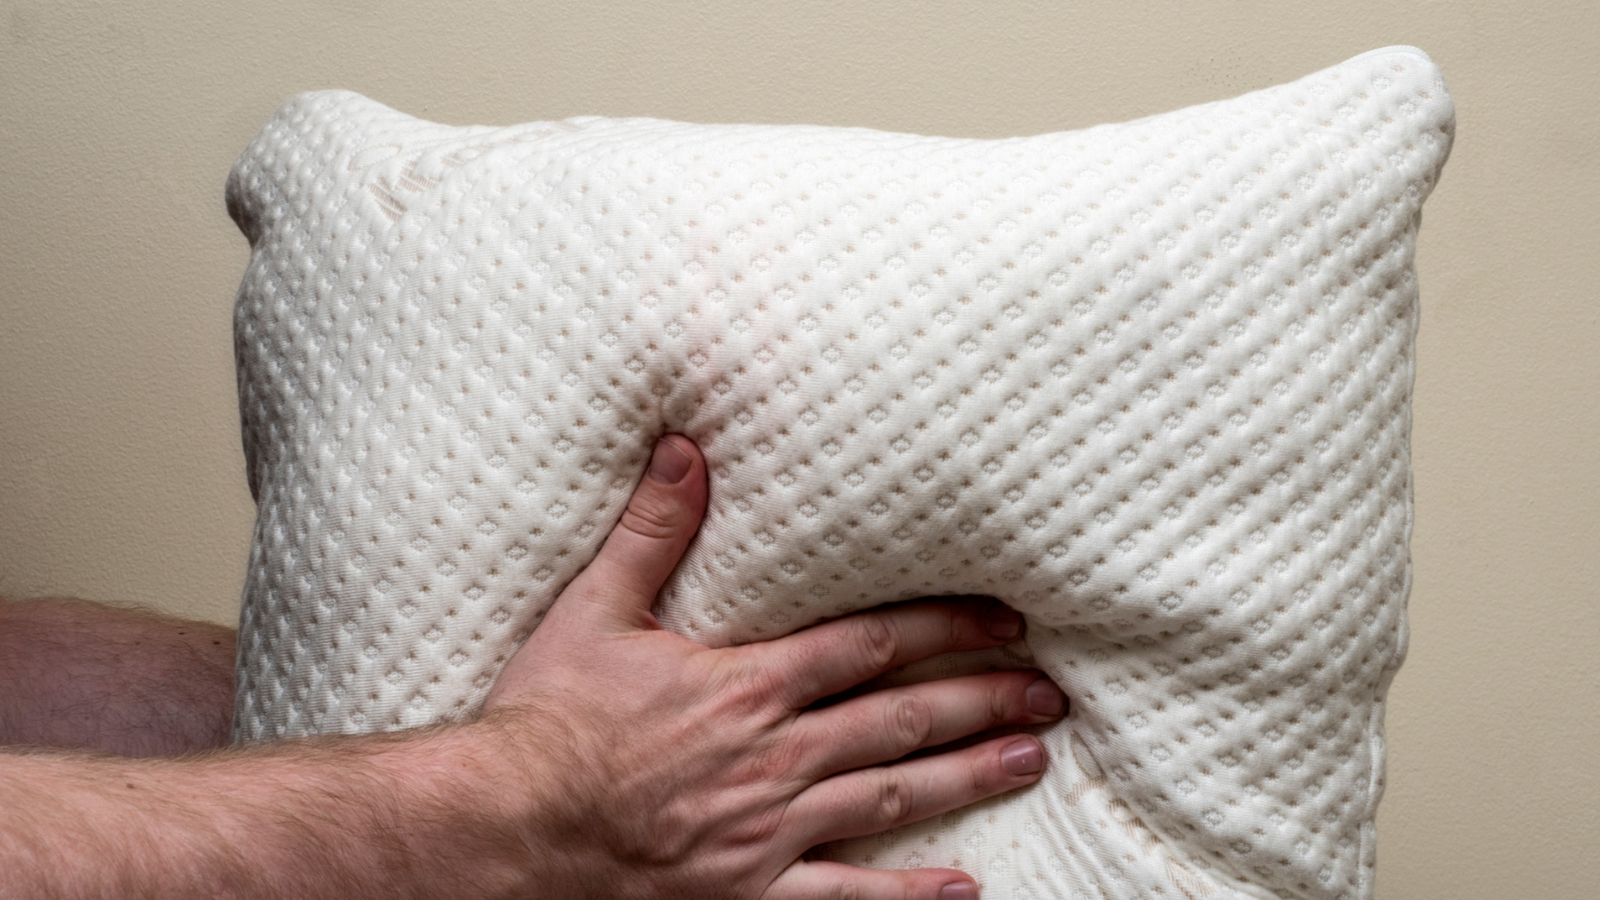 best budget memory foam pillow